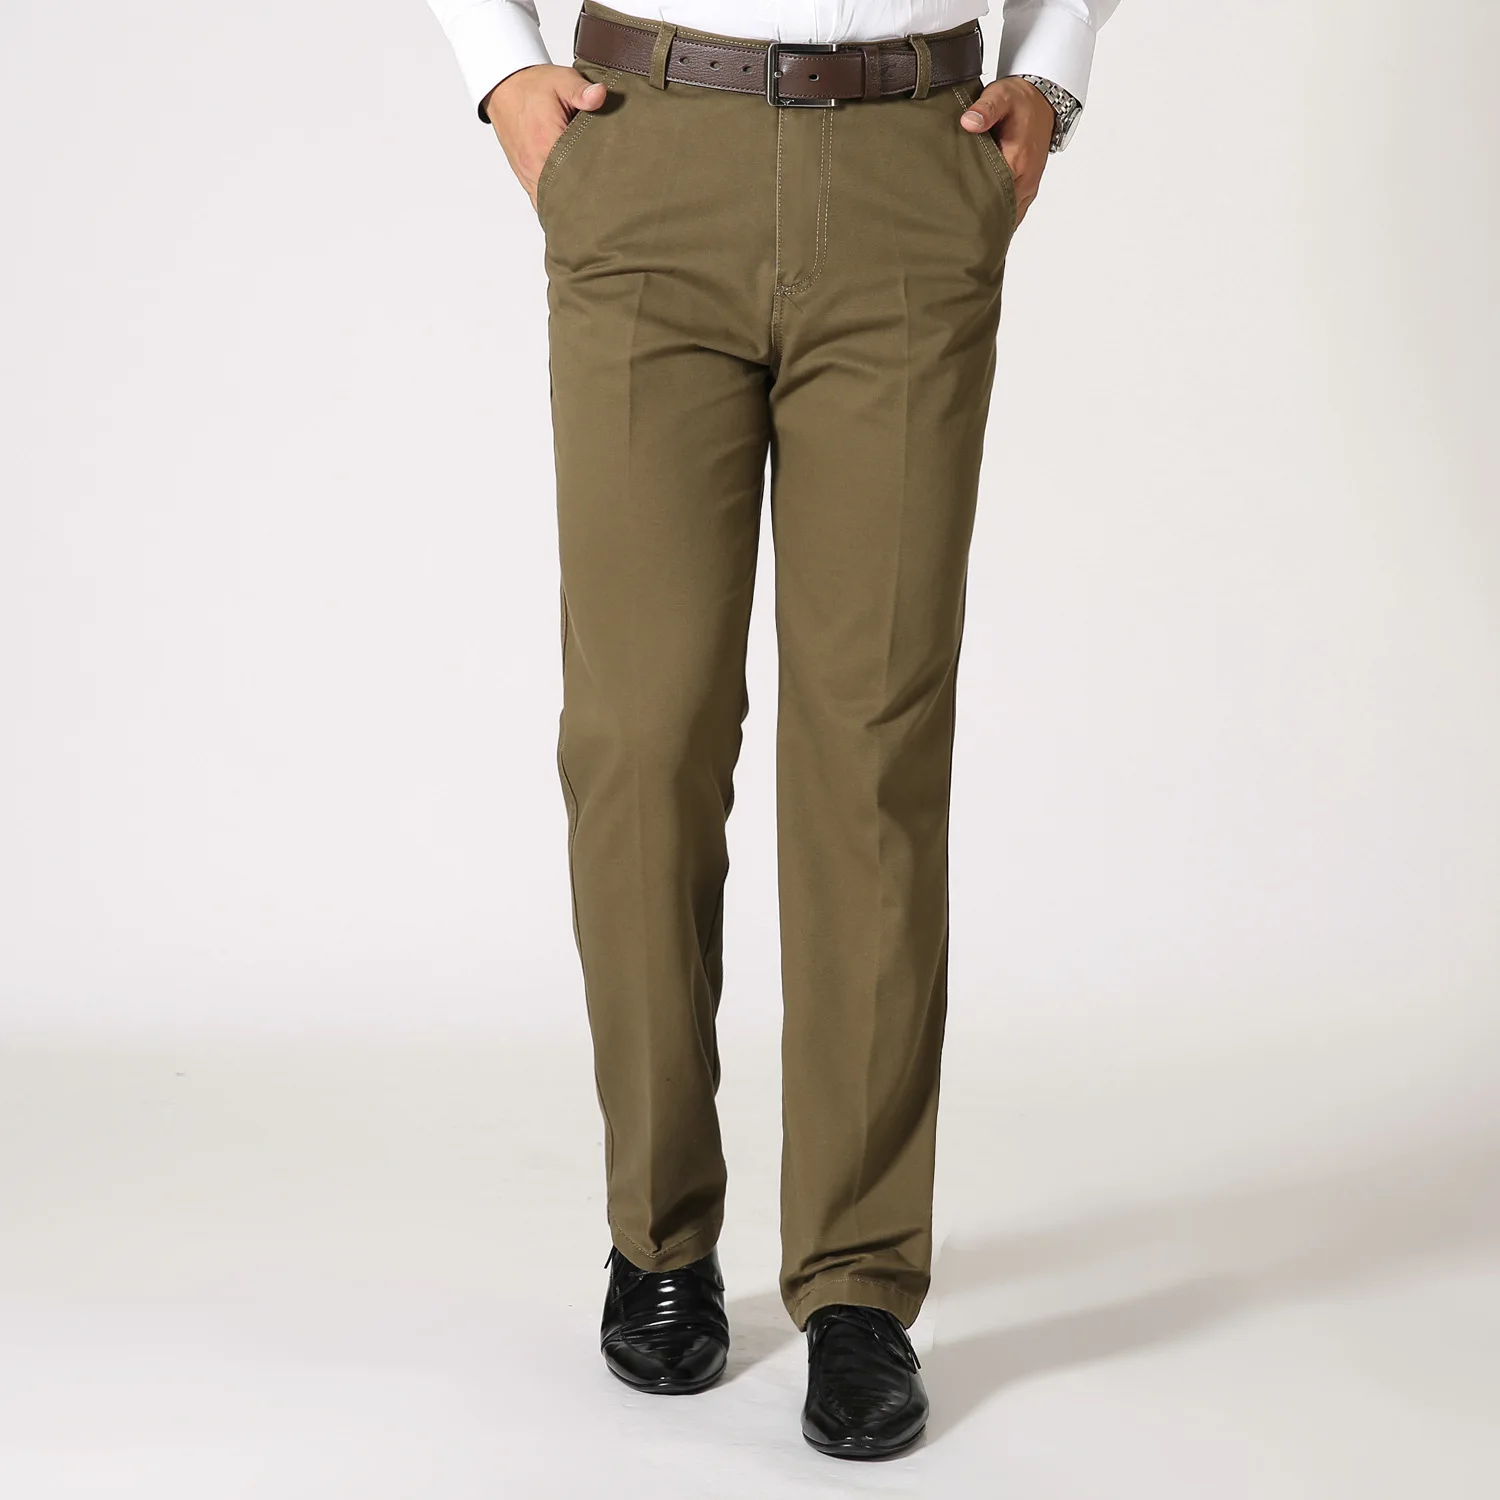 New suit pants men business trousers Office casual social pants men's ...